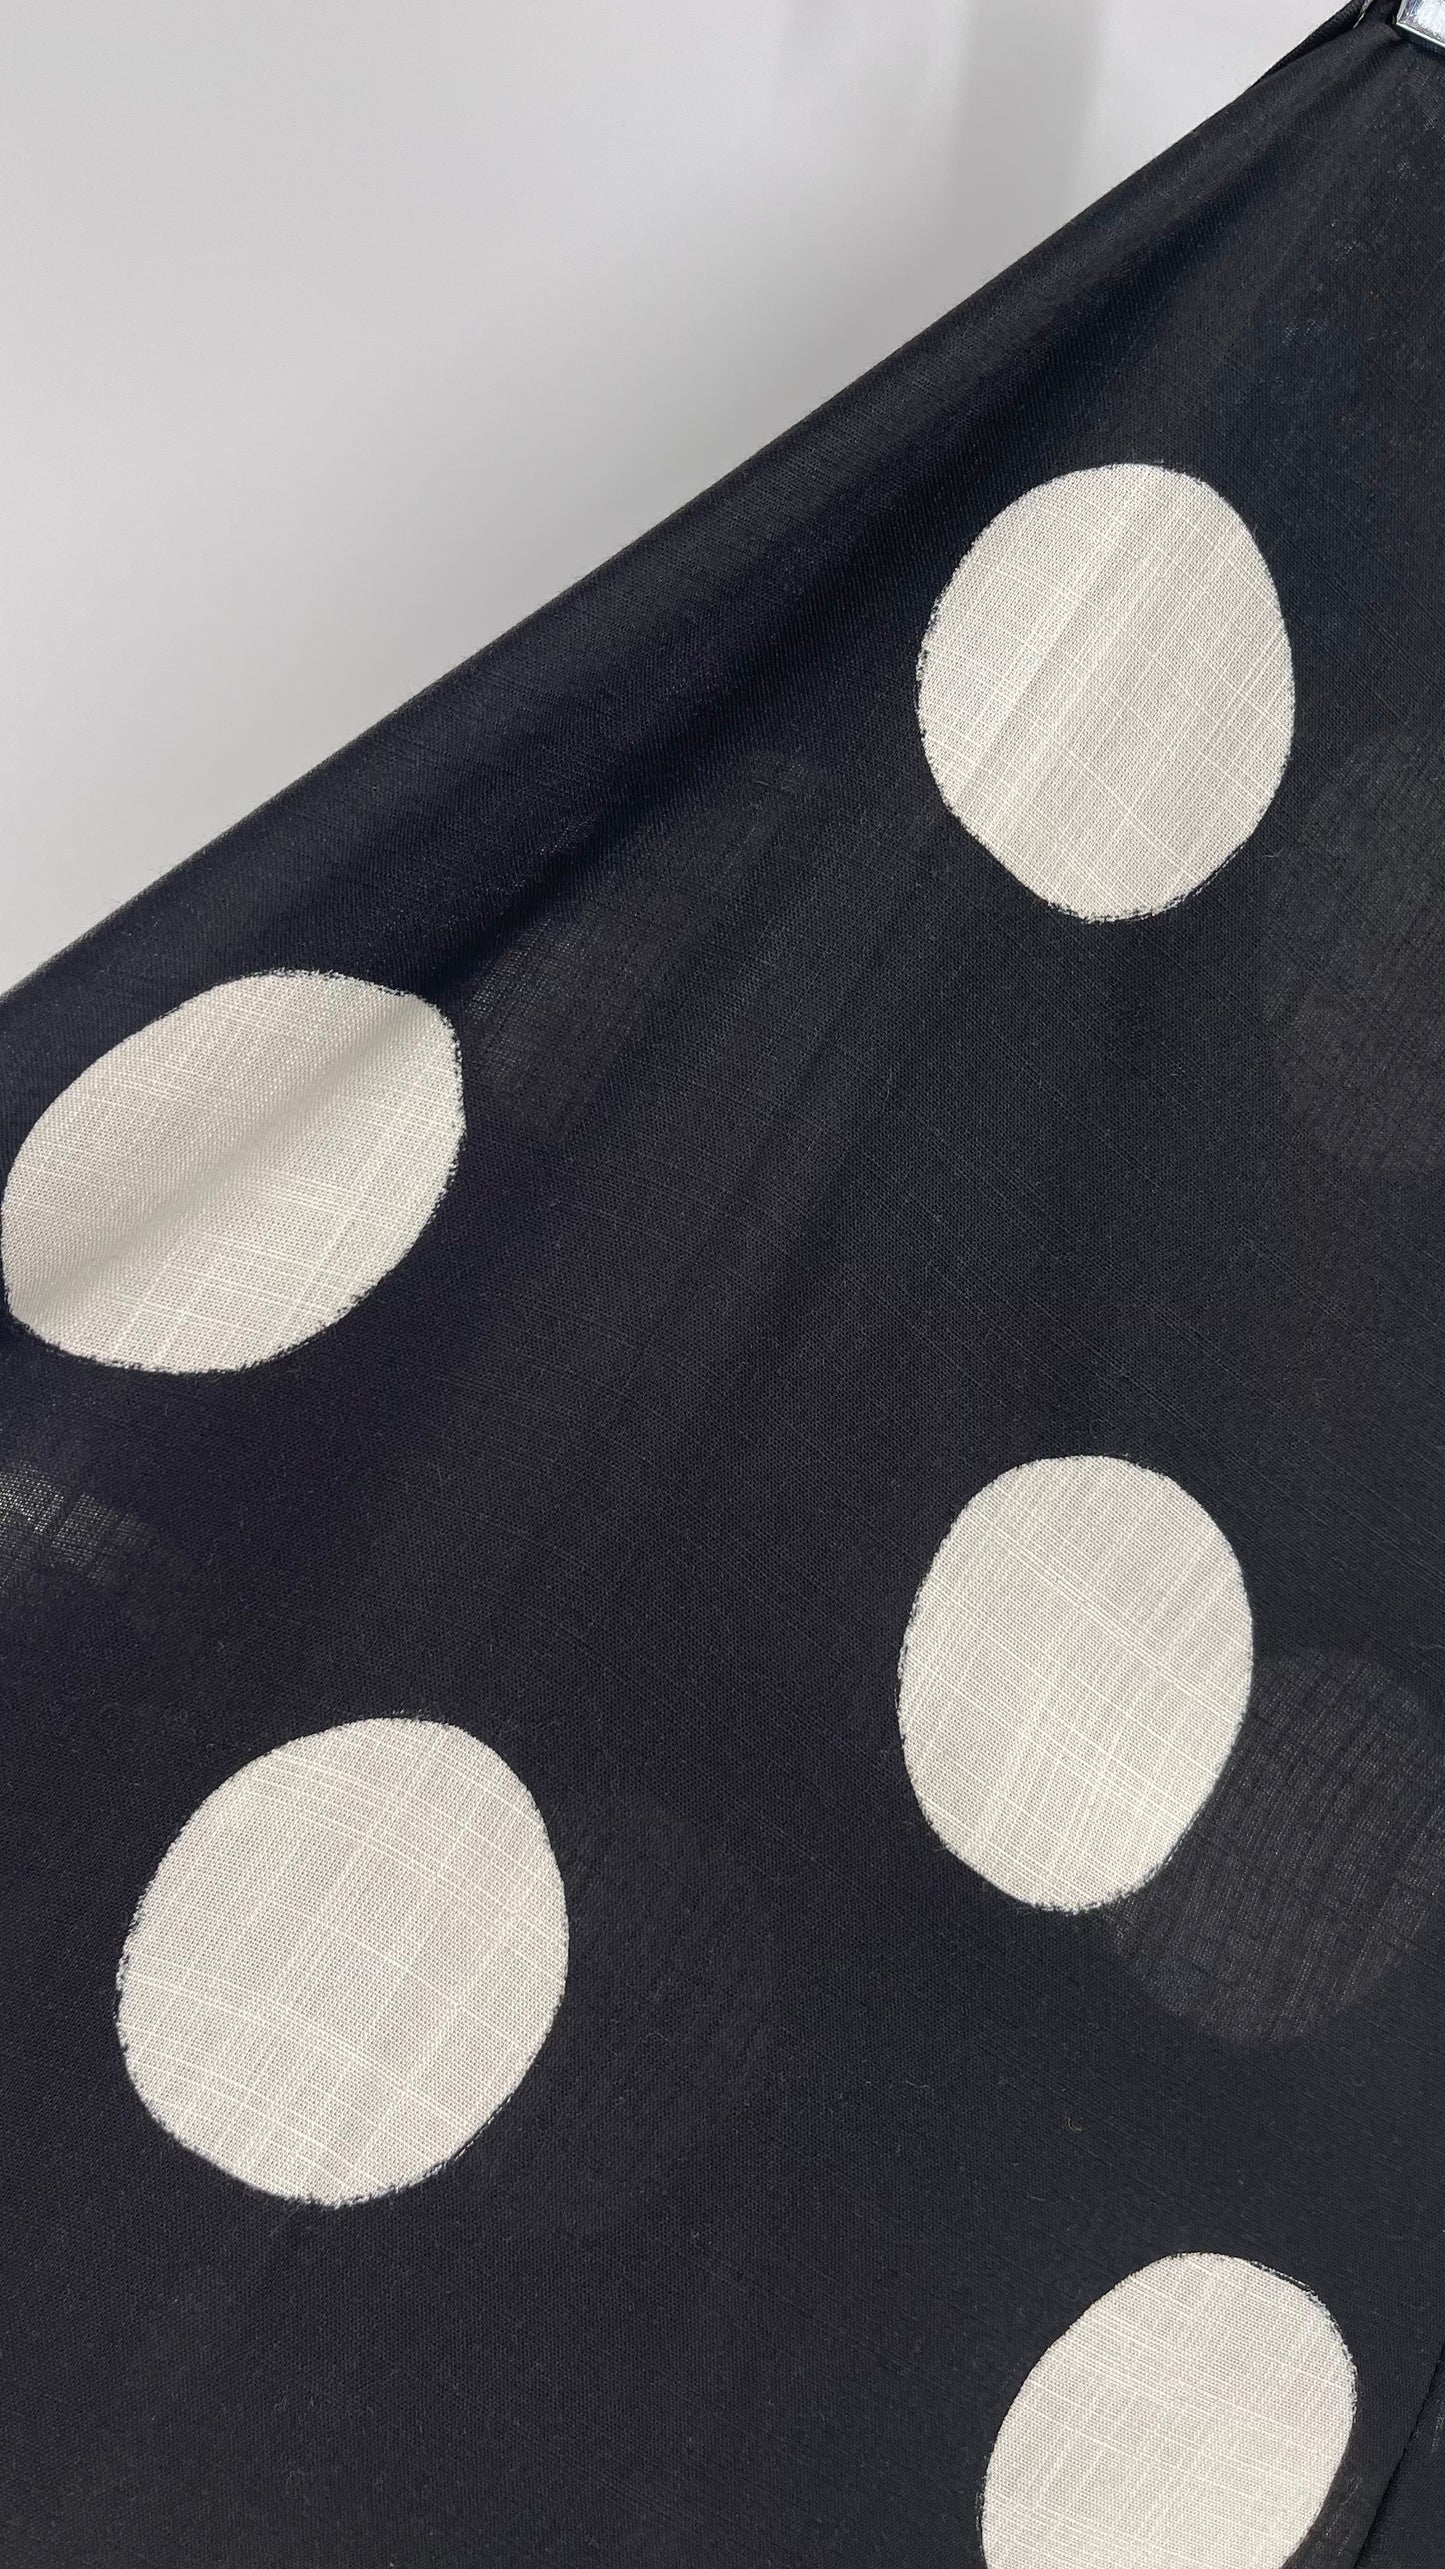 Handmade 9 in 1 Black/White Polka Dot Jumpsuit (One Size) •AS SEEN ON TIKTOK•